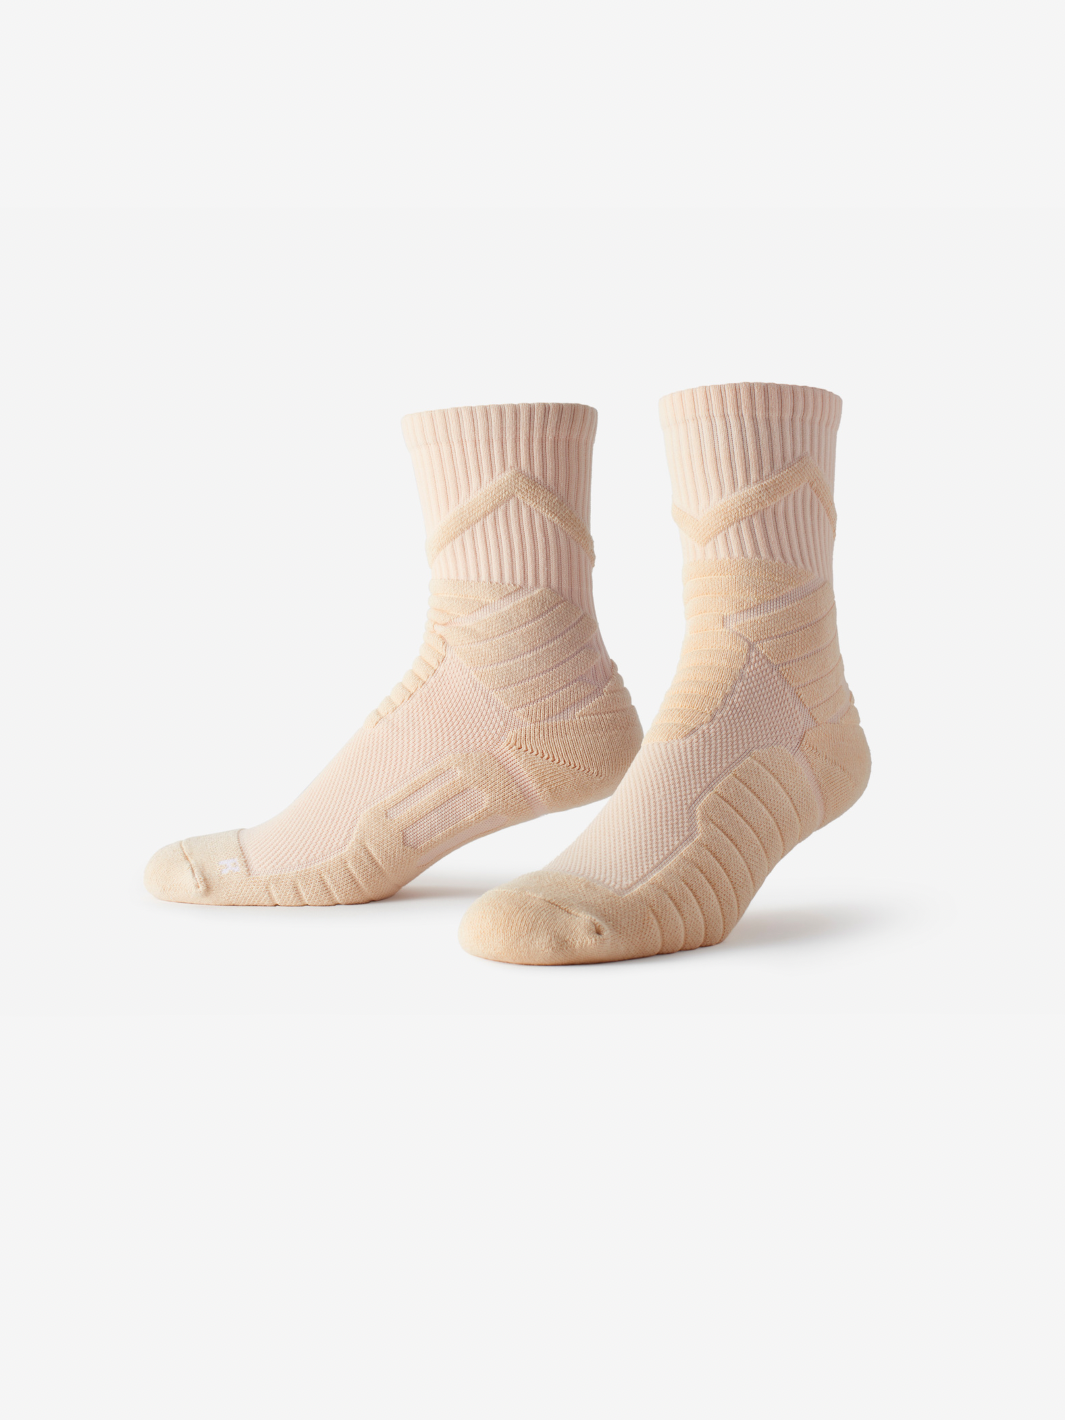 Best Women's Cotton Socks | SMRTFT | Athletic Spark Mid High Sock | Mid Calf Running Socks